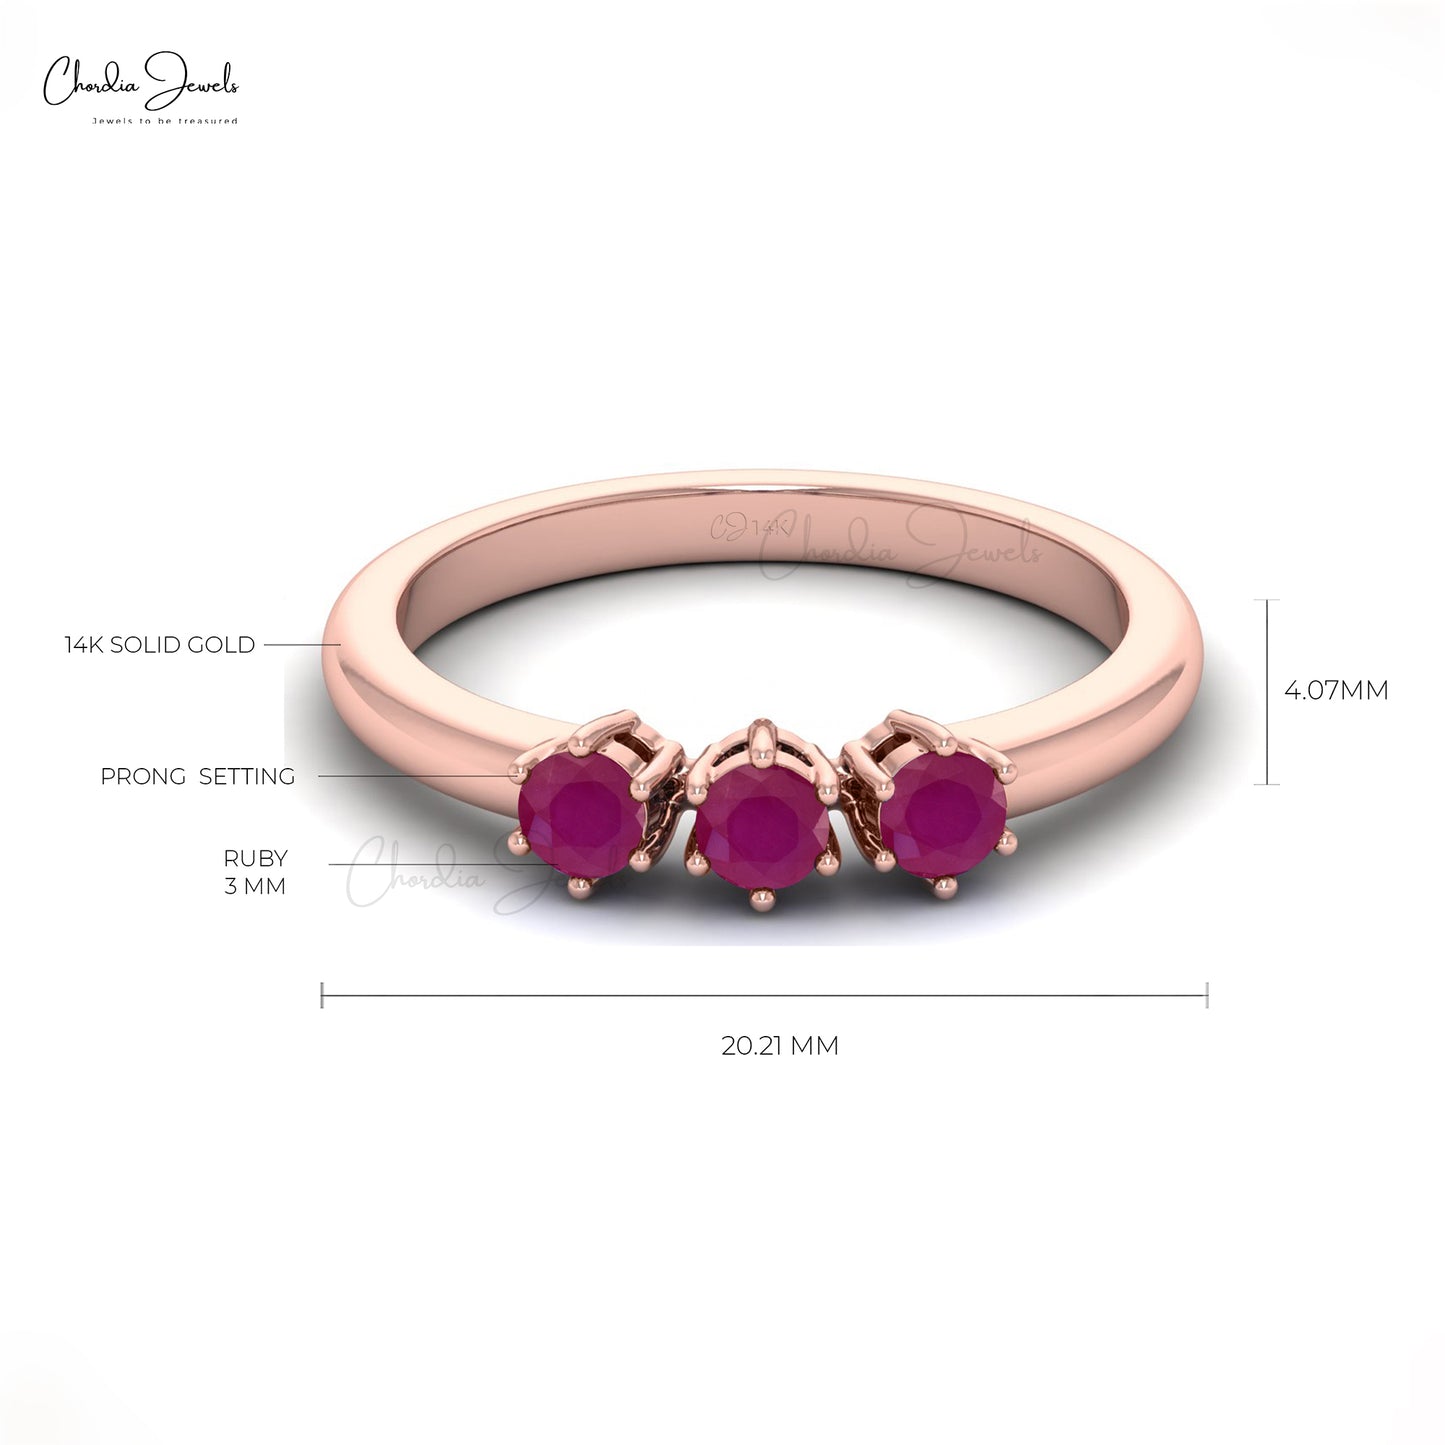 Buy Ruby Gemstone Ring